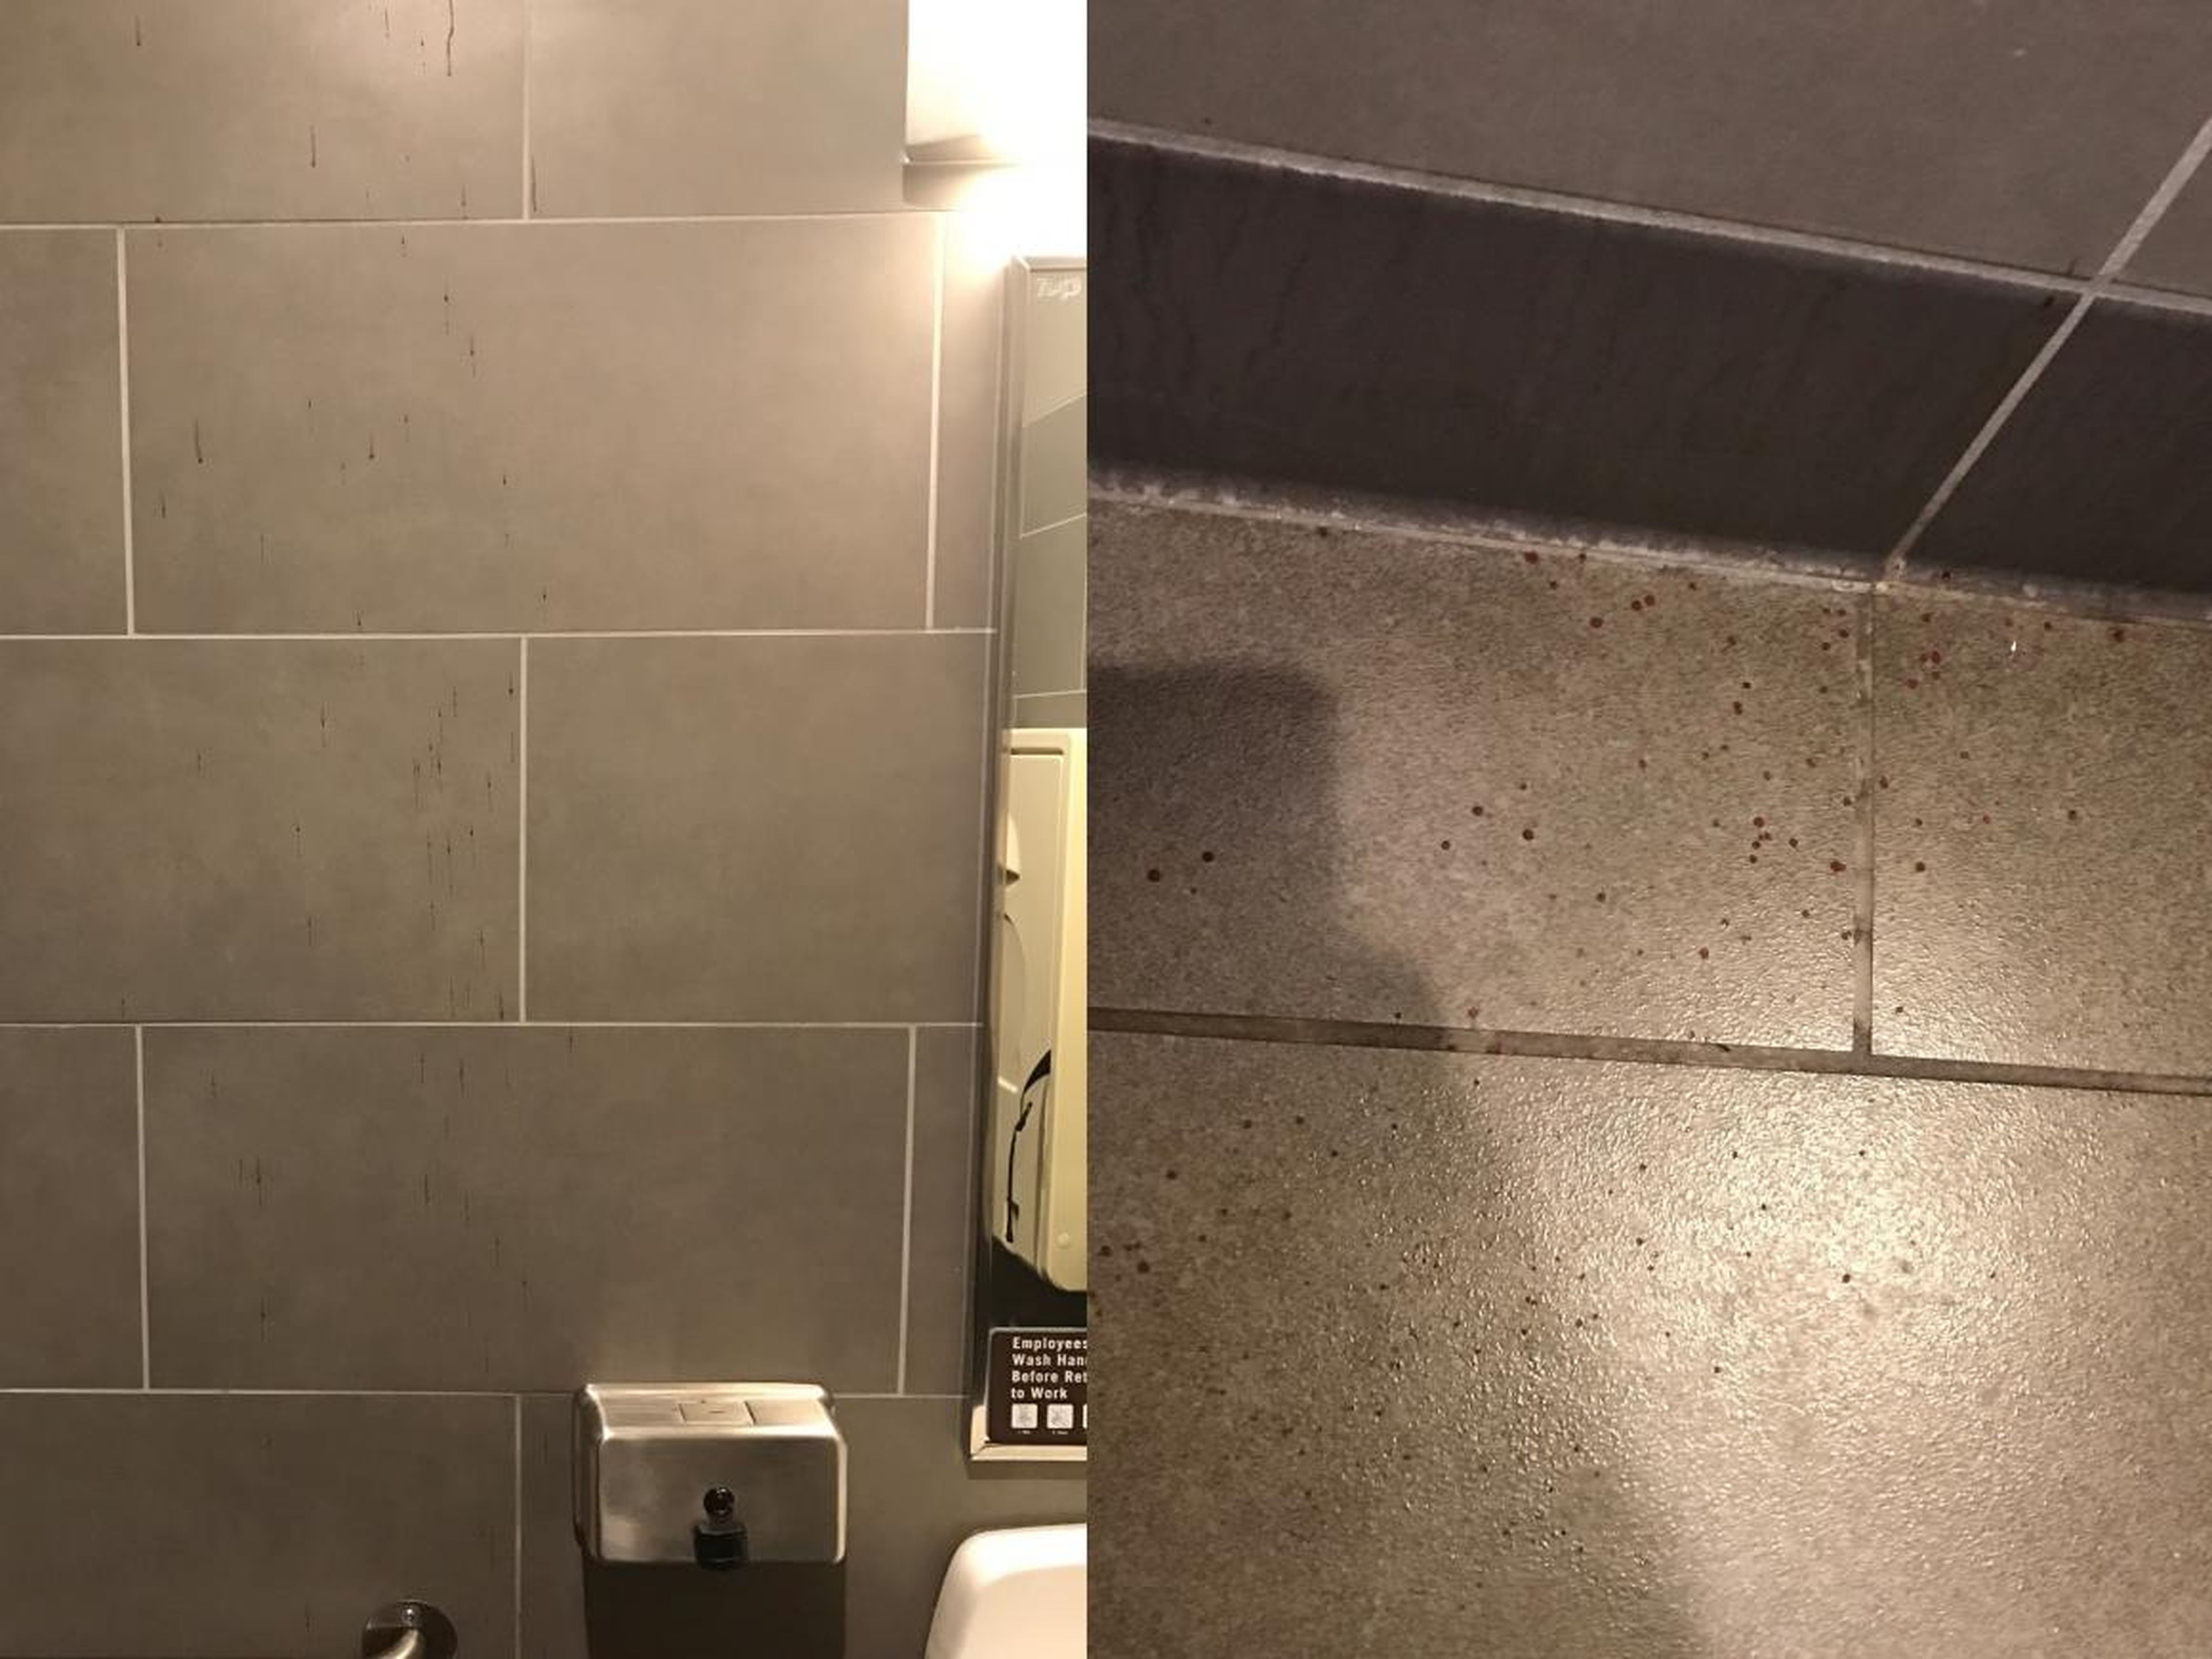 Sangre en la pared y el baño de un baño de Starbucks (fotos de mayo de 2018).